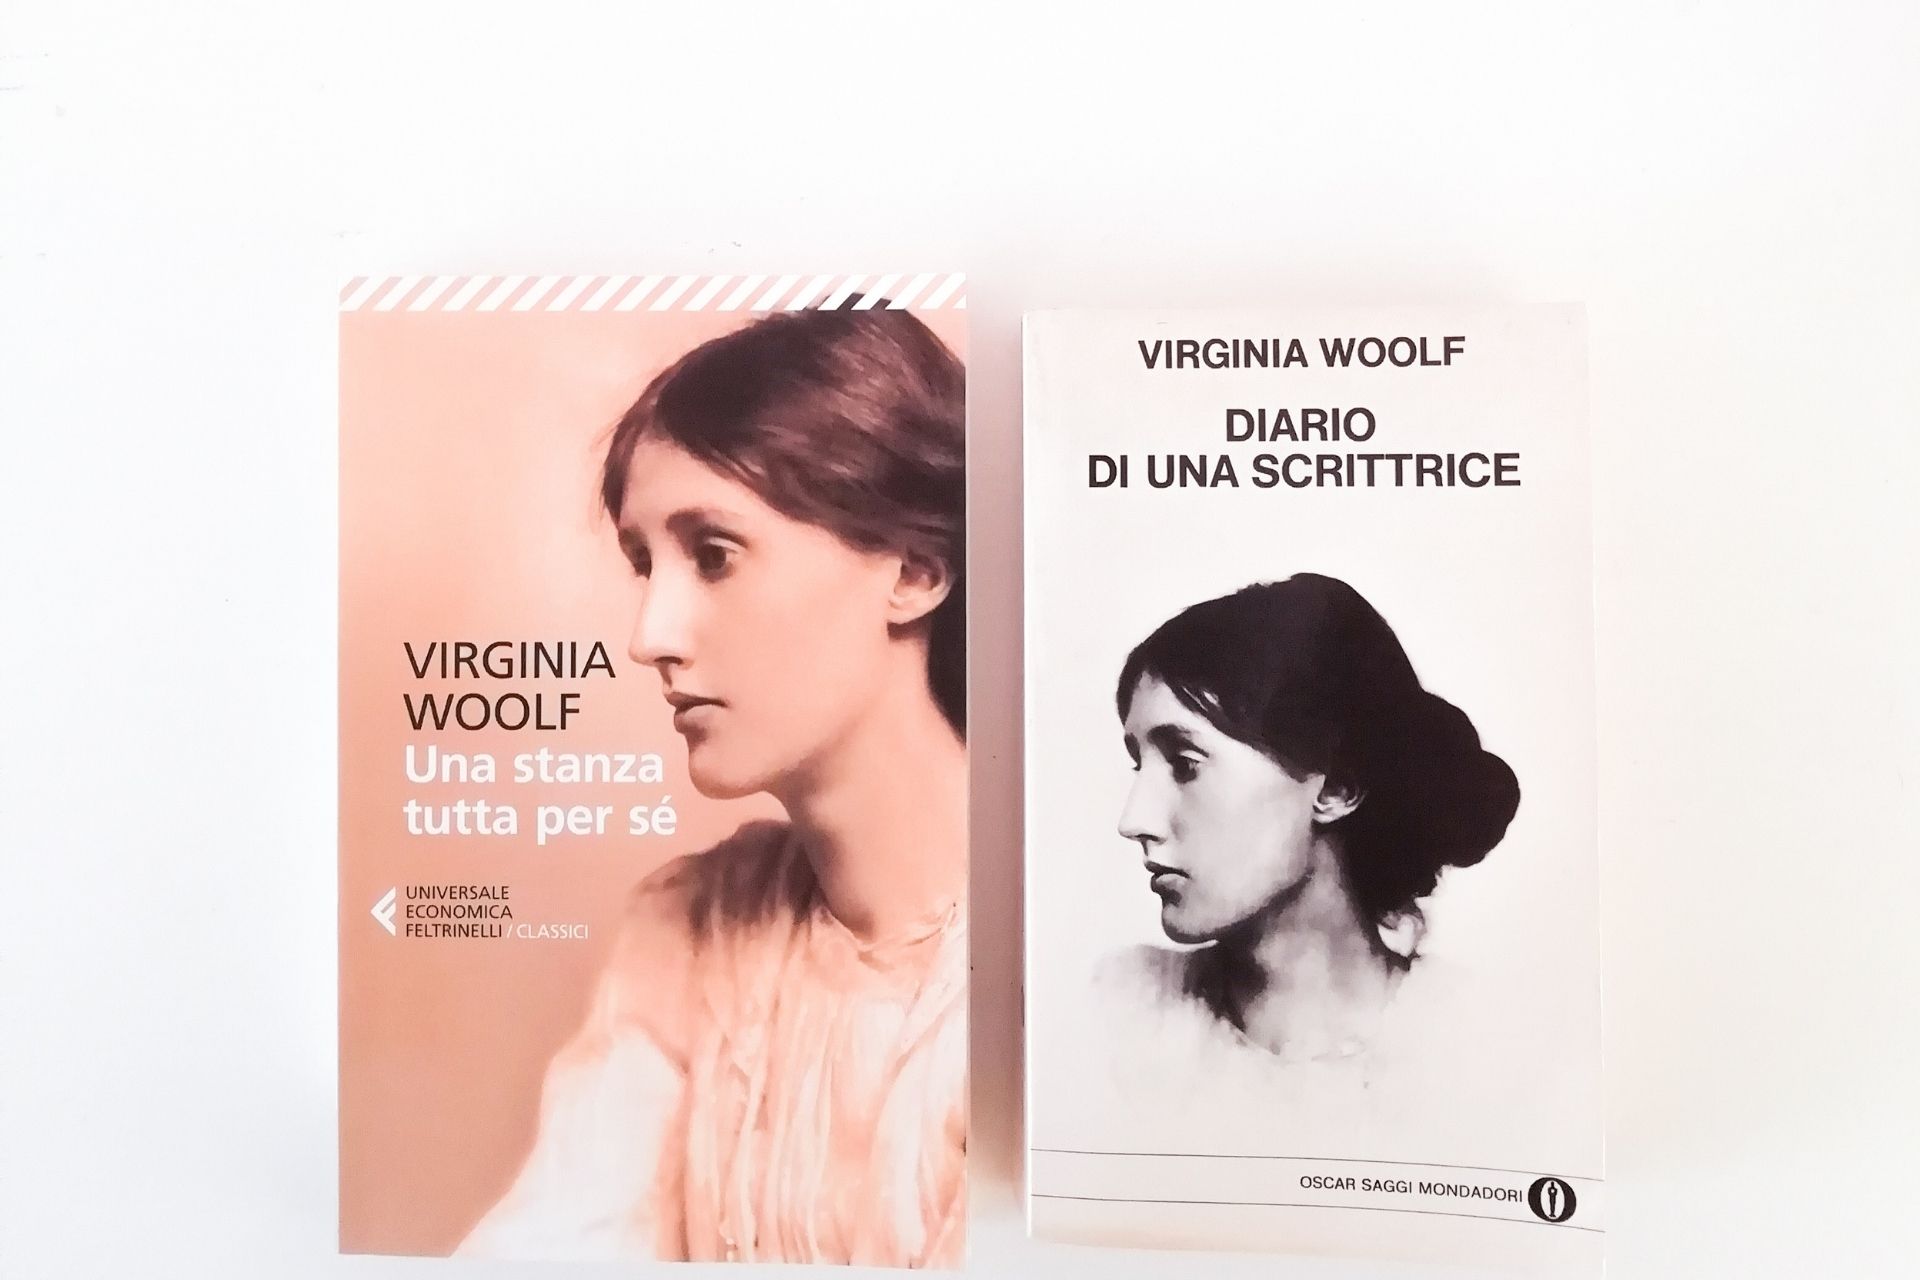 Virginia Woolf, una stanza tutta per sé - Paroladordine